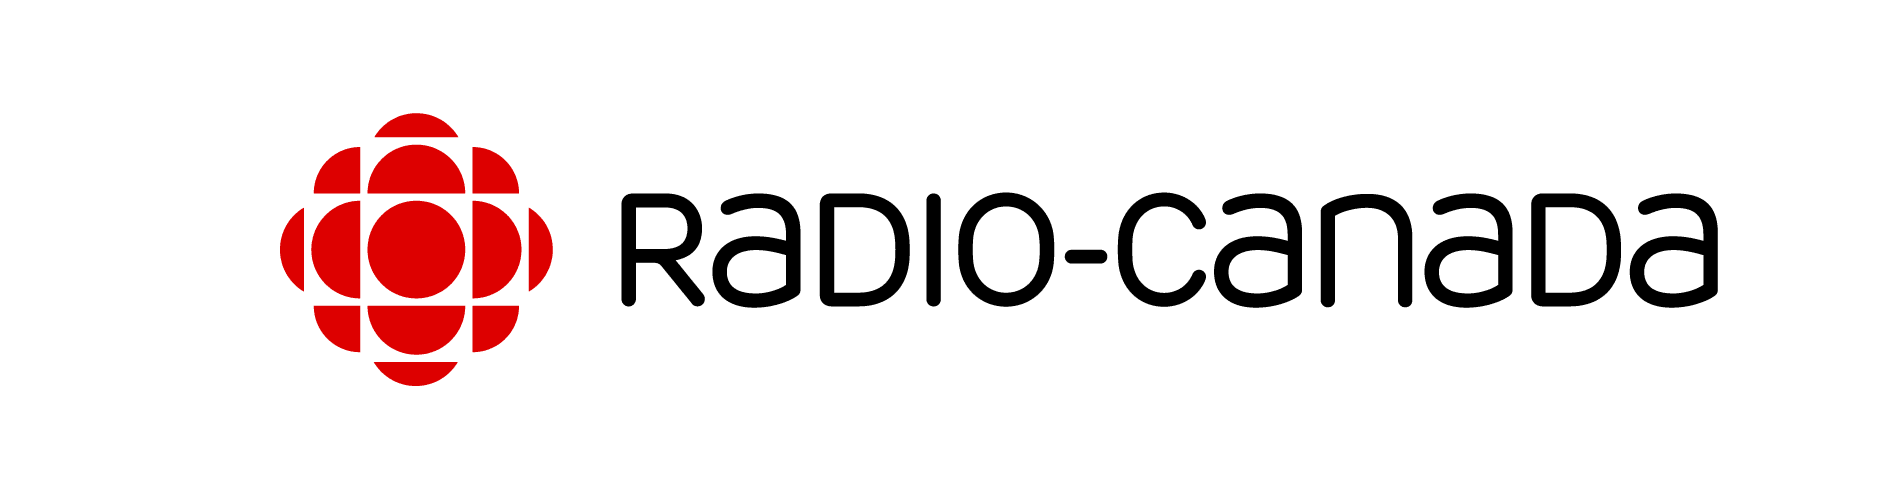 Logo de Radio-Canada